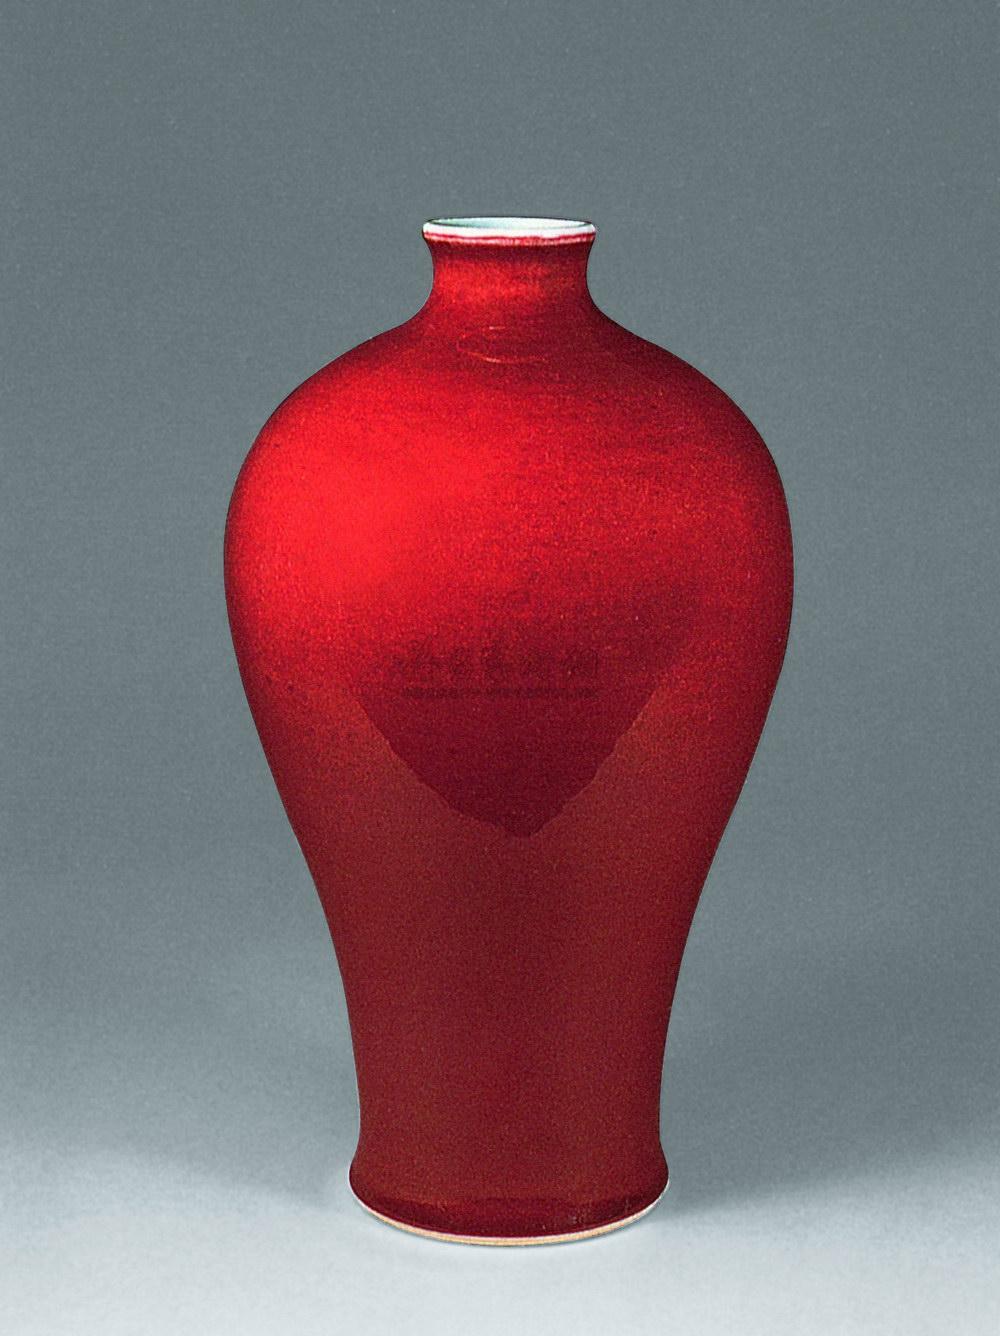 1311清中期霁红釉梅瓶